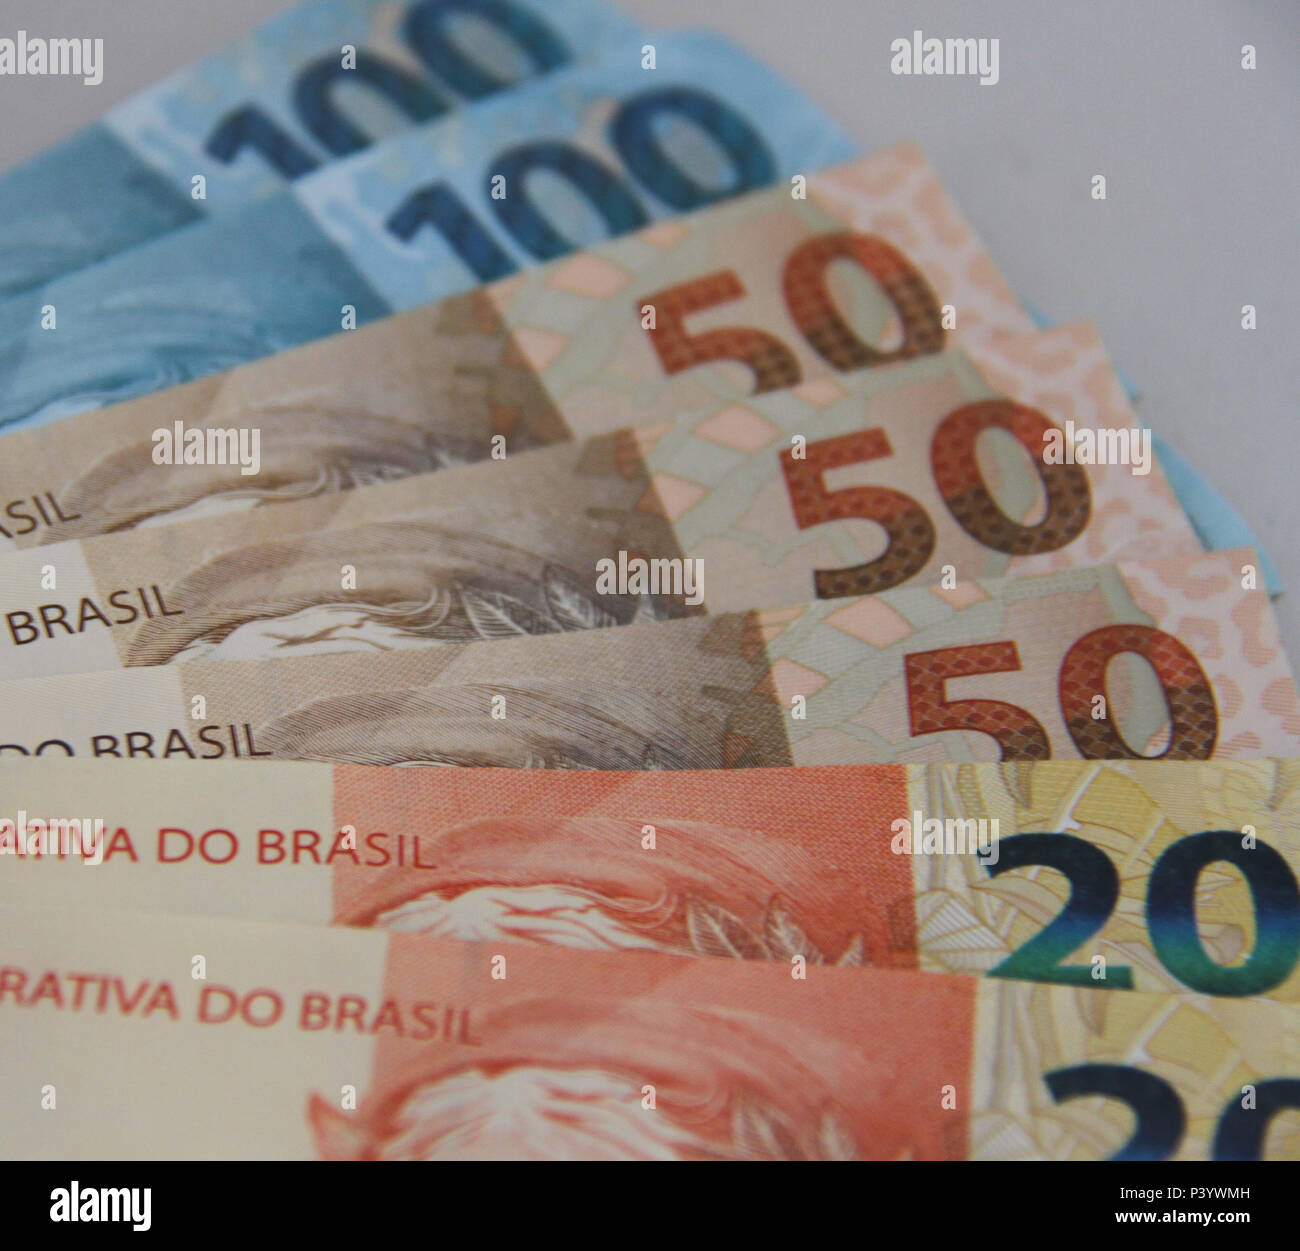 Dinheiro do Brasil, notas de Real, moeda brasileira Stock Photo - Alamy